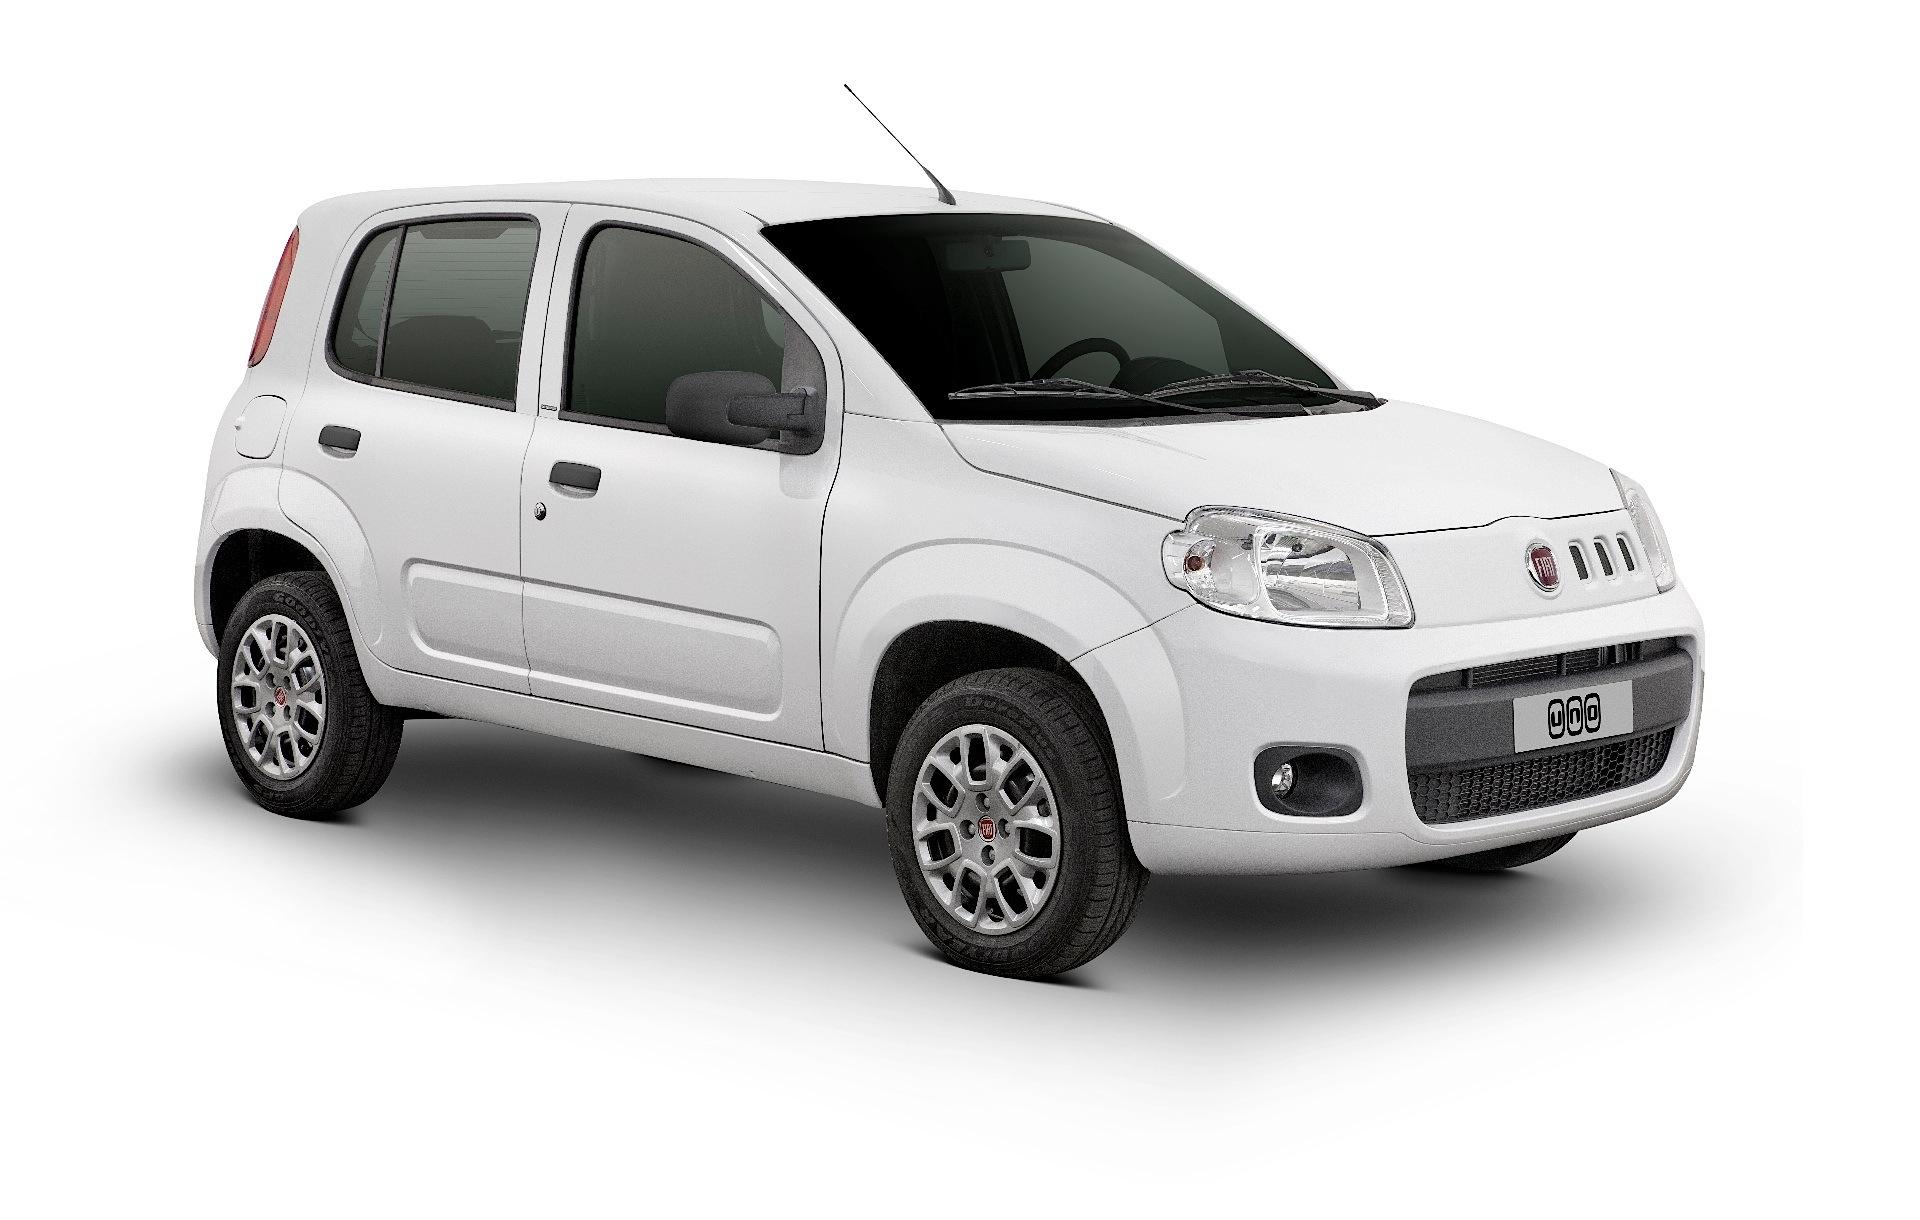 Fiat Uno retoma motor 1.3 e versão aventureira Way; preços sobem